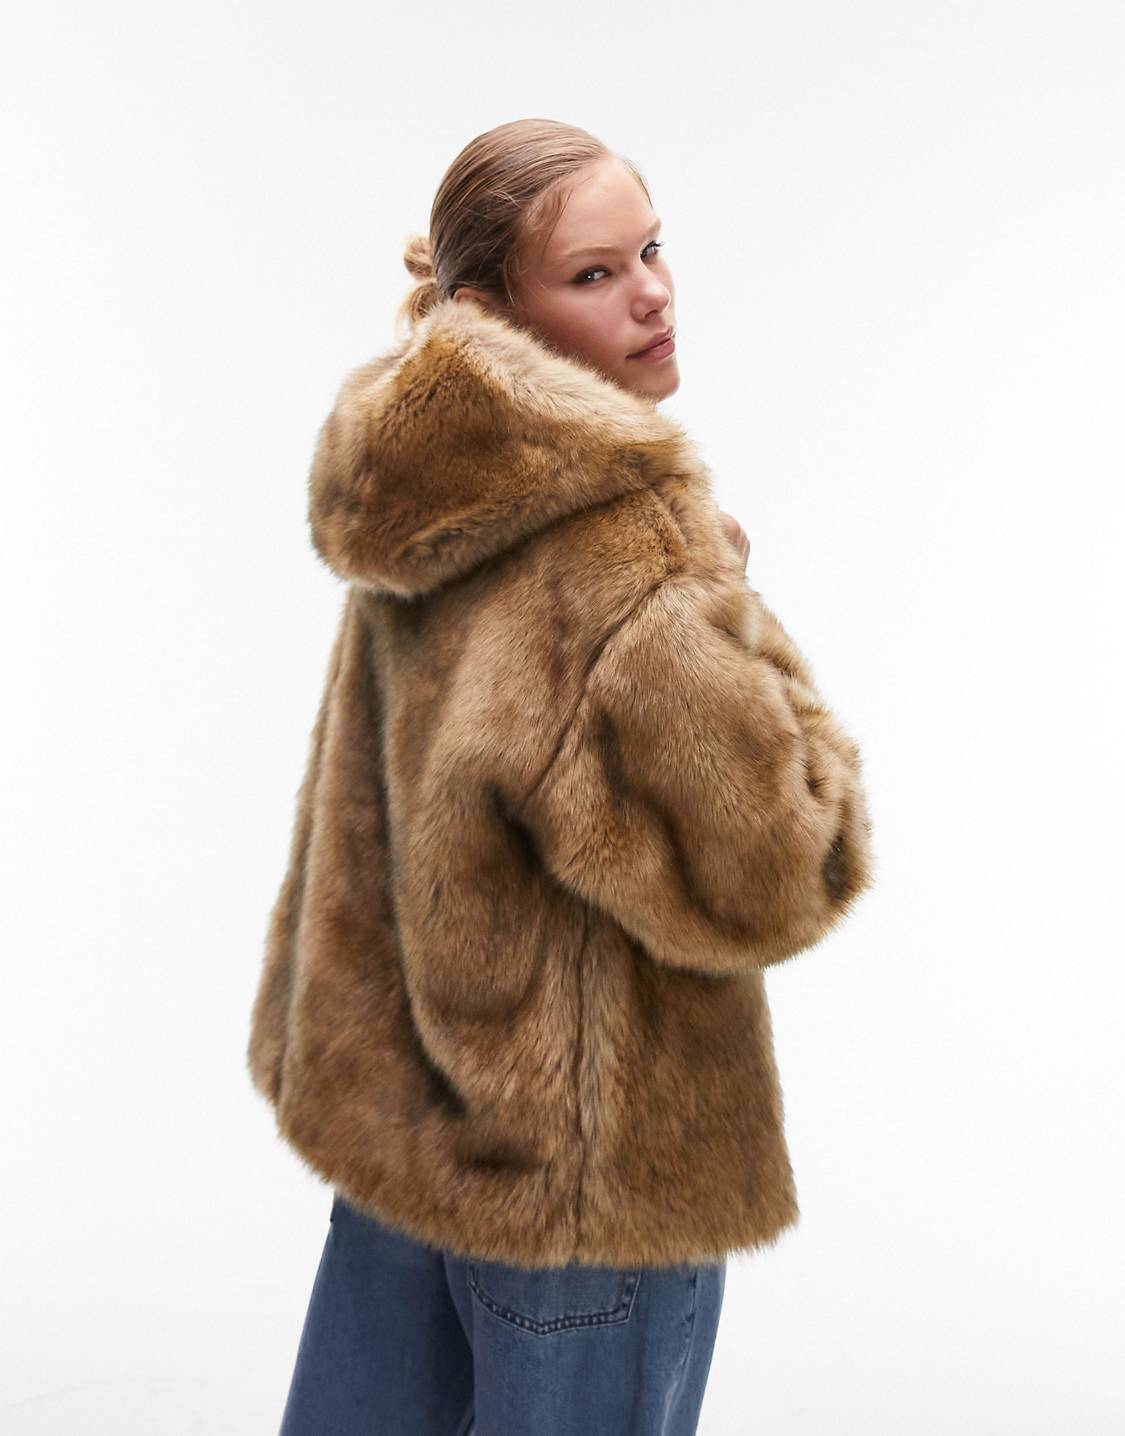 Topshop hooded faux fur coat in vintage fur, £95